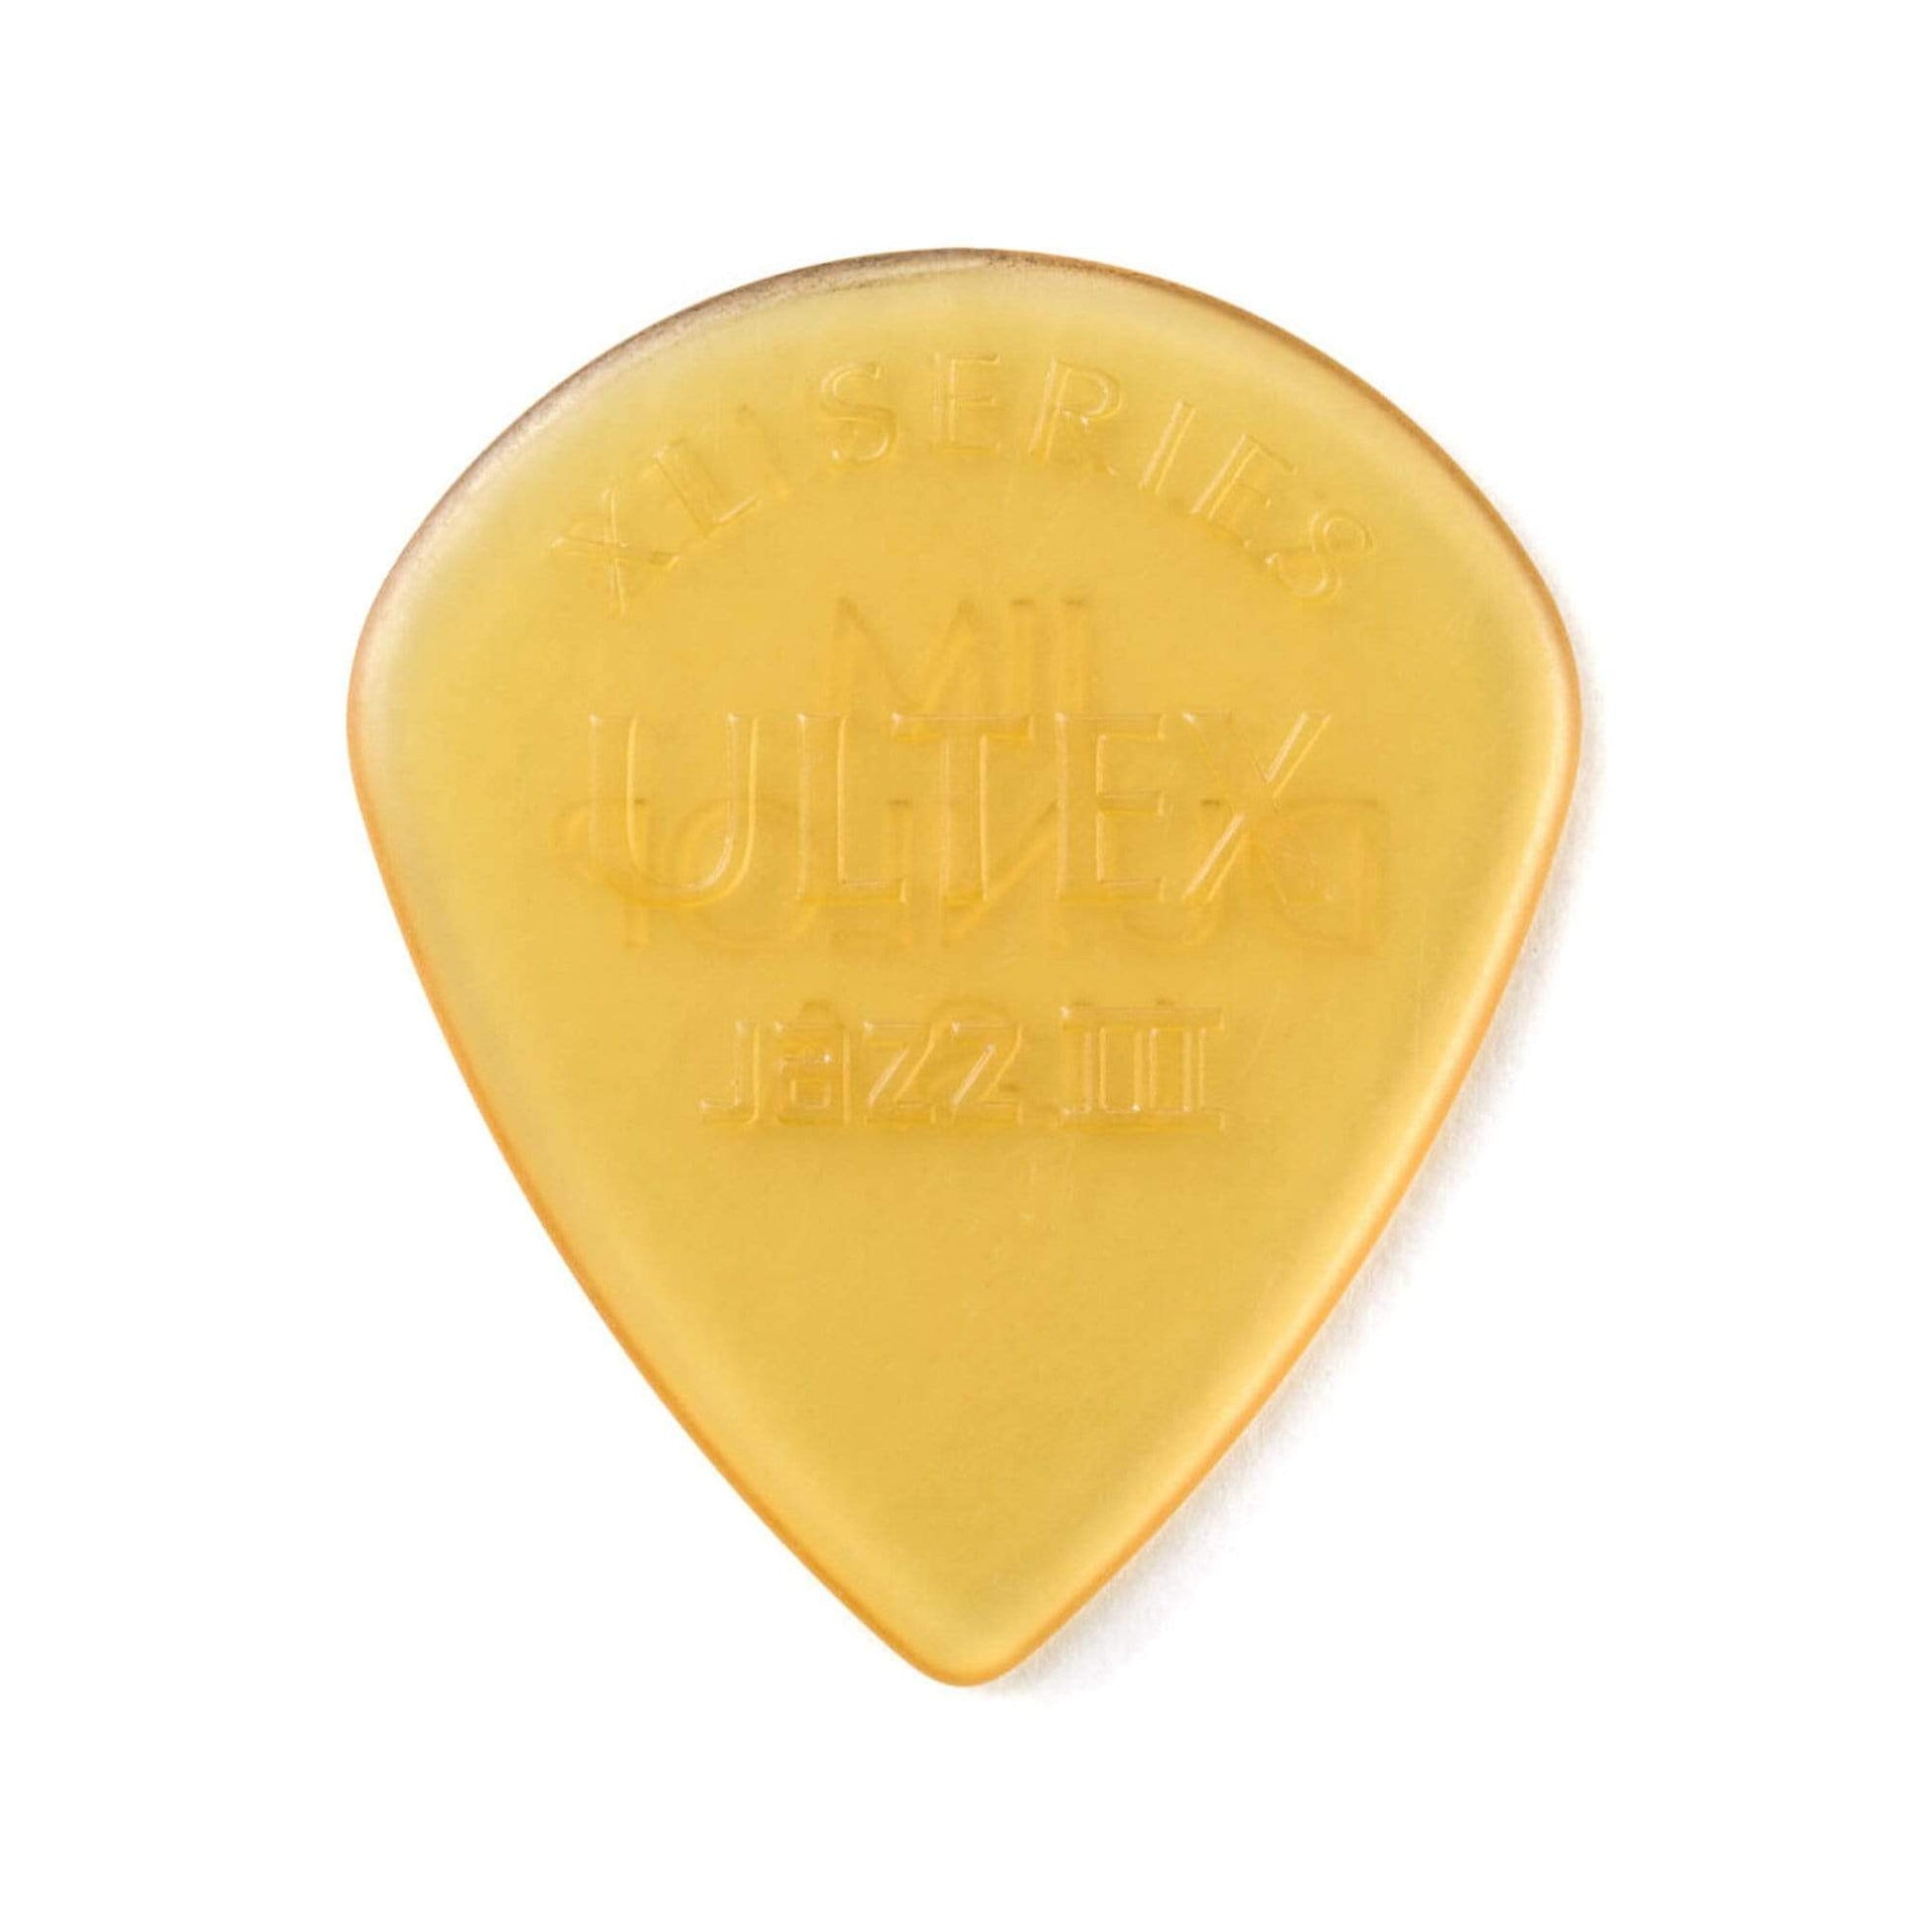 Dunlop Ultex Jazz III XL 1.38mm Player's Pack 5 Pack (30) Bundle Accessories / Picks